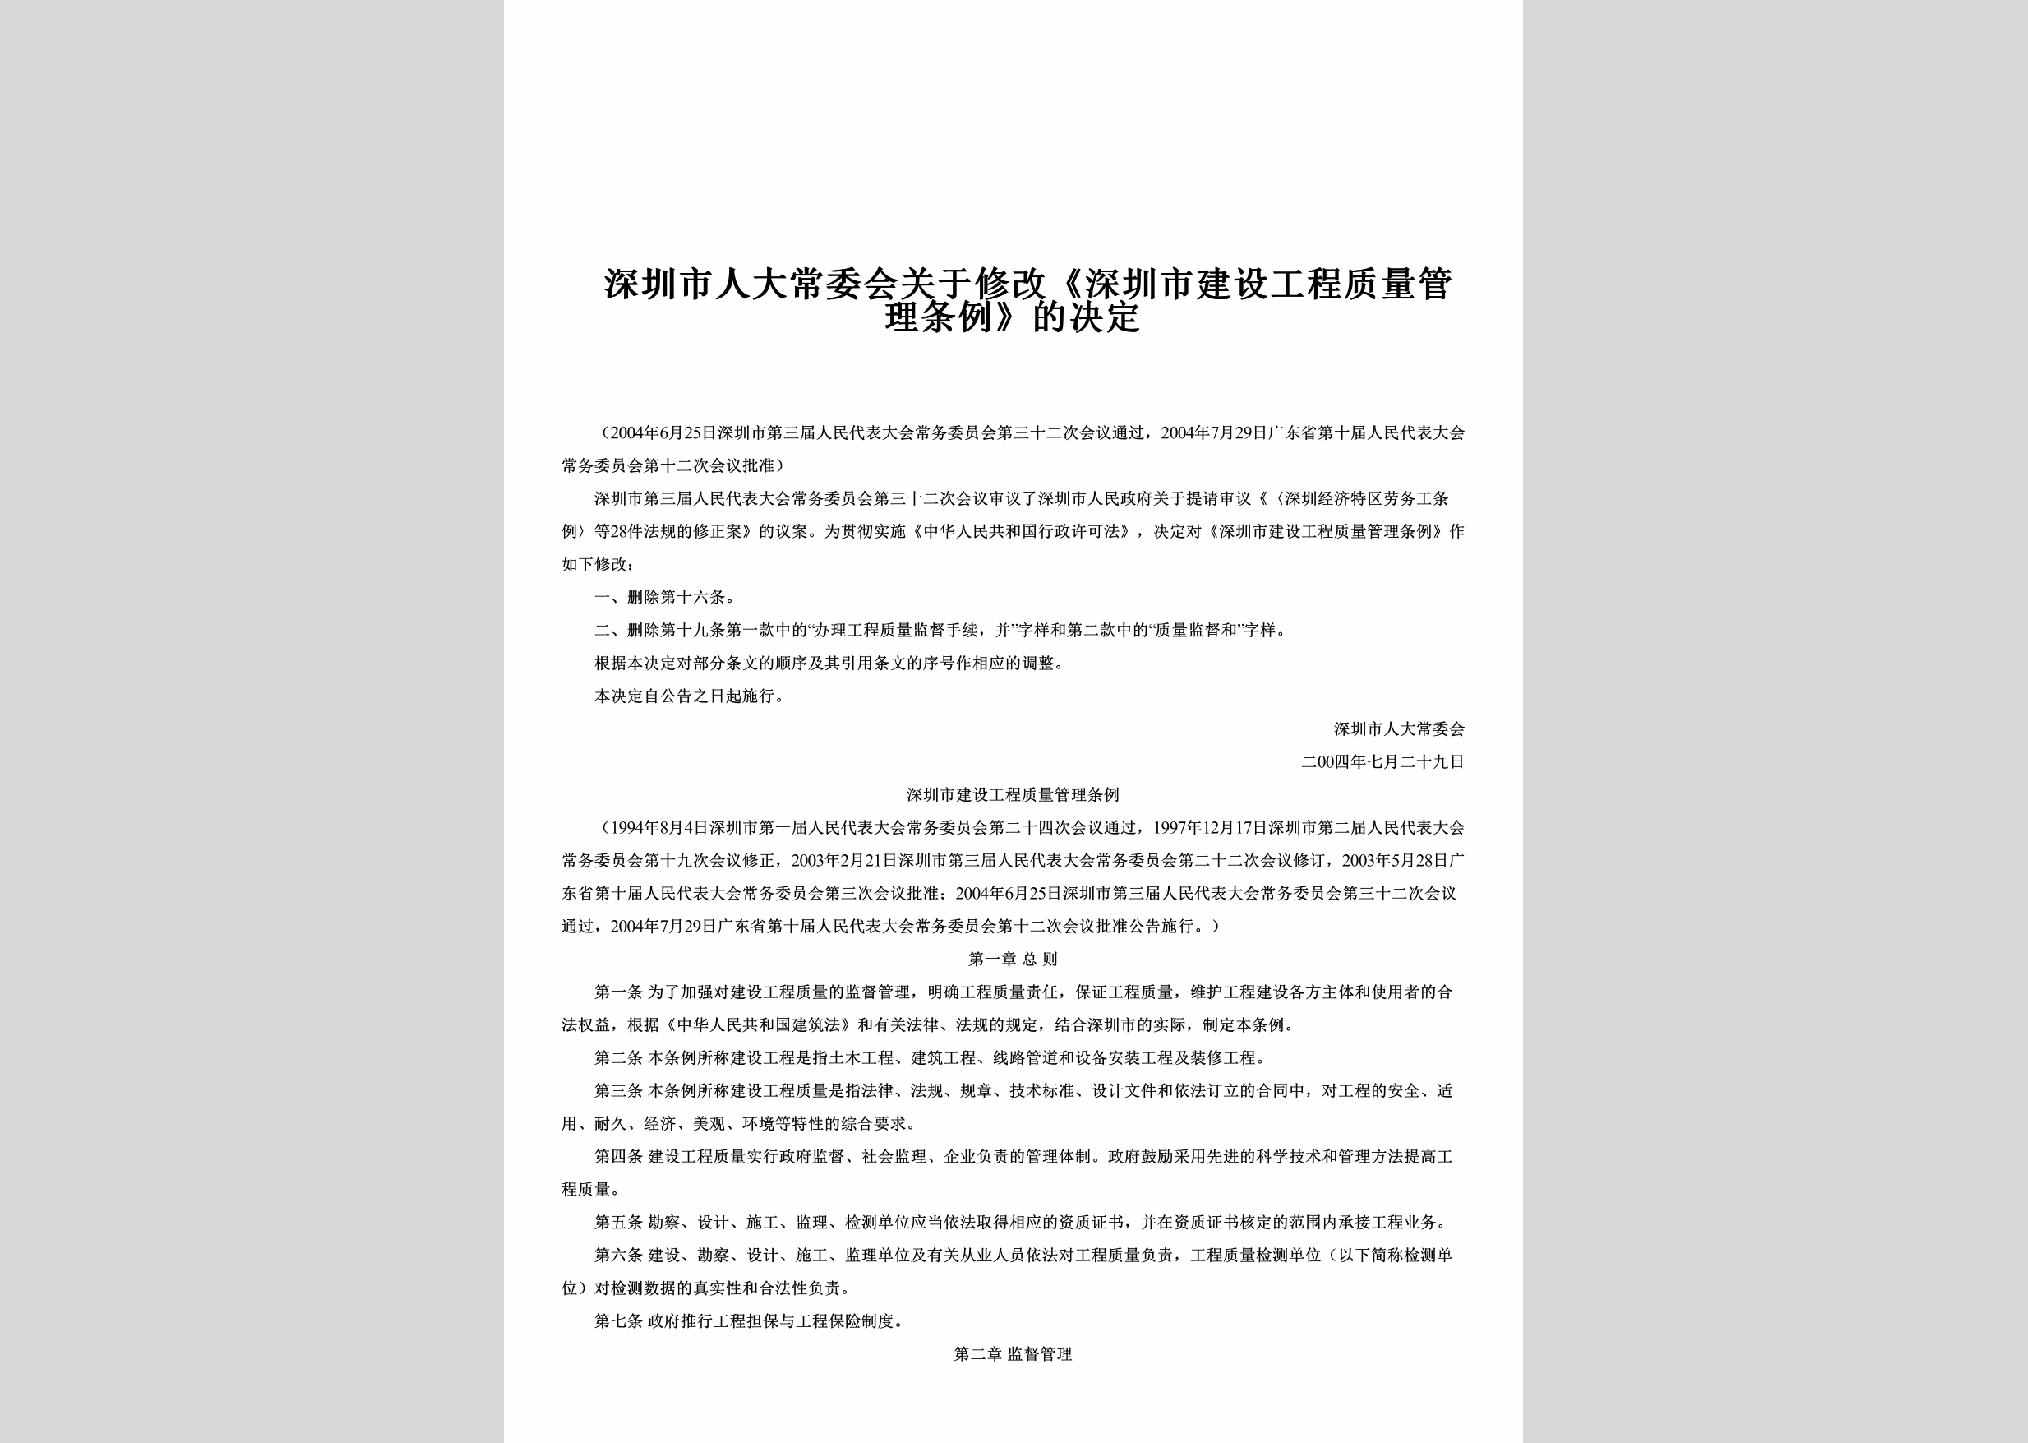 GD-GCZLGLTL-2004：关于修改《深圳市建设工程质量管理条例》的决定